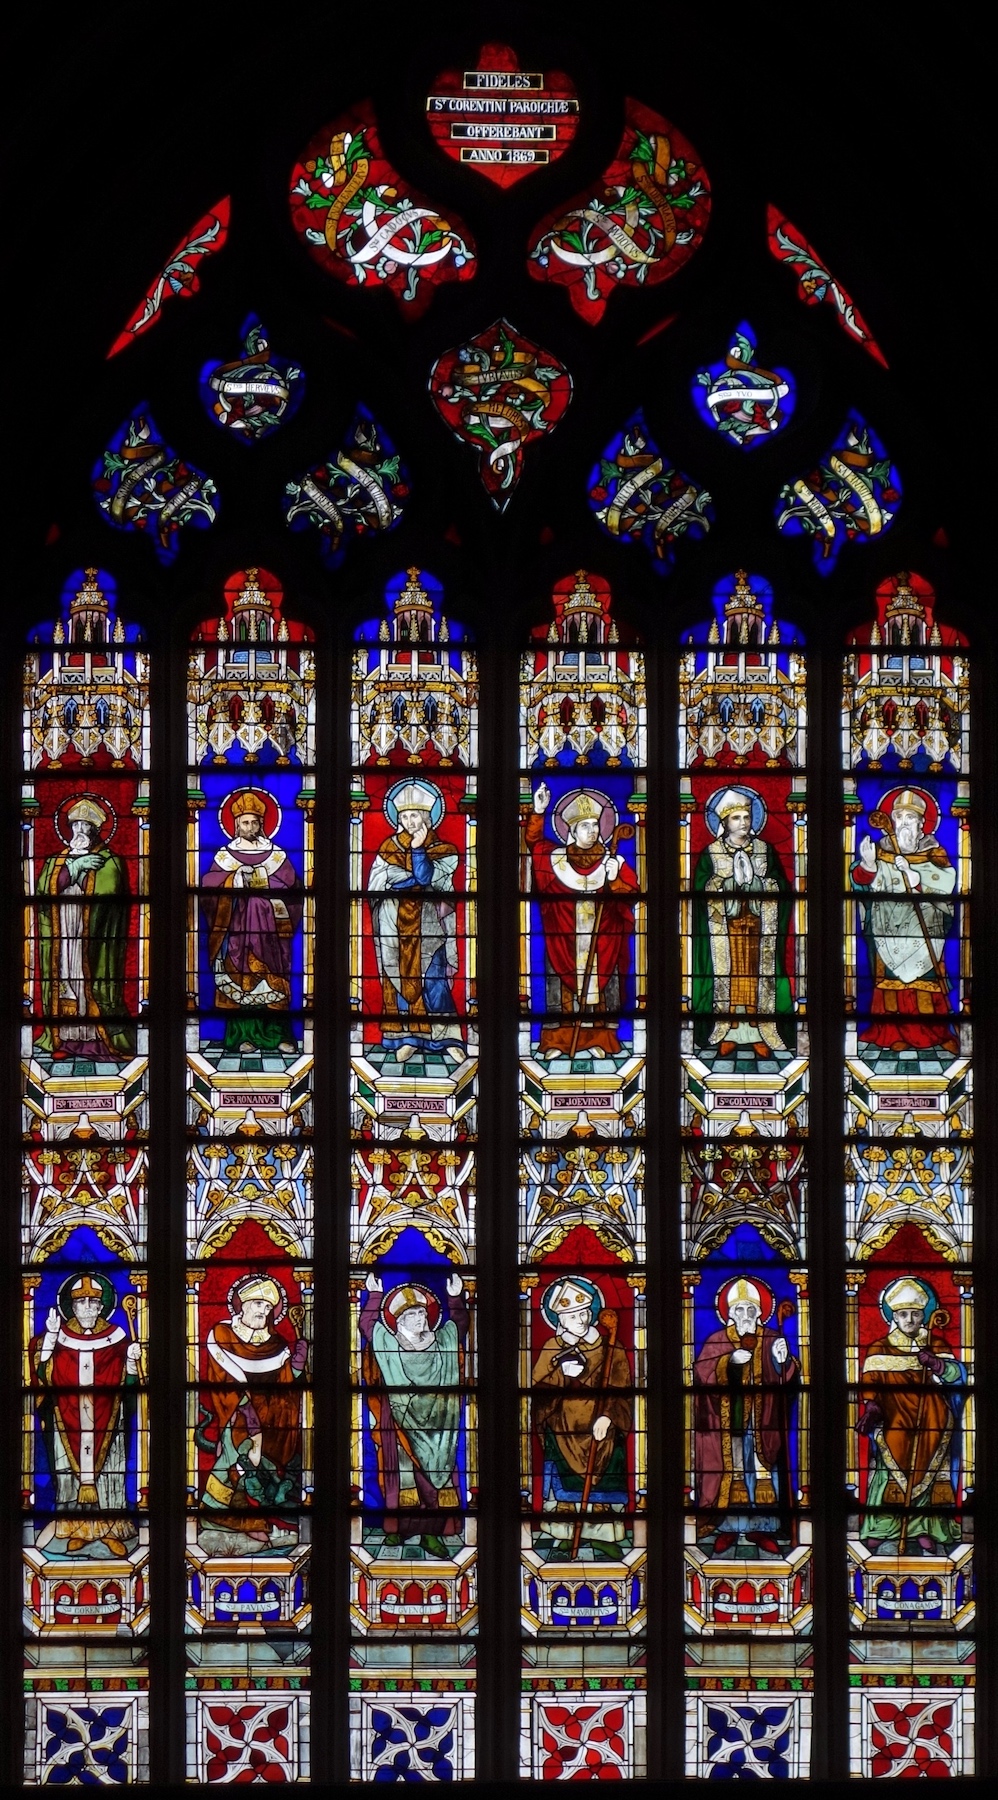 Les évêques - Cathédrale Saint Corentin - Quimper 29